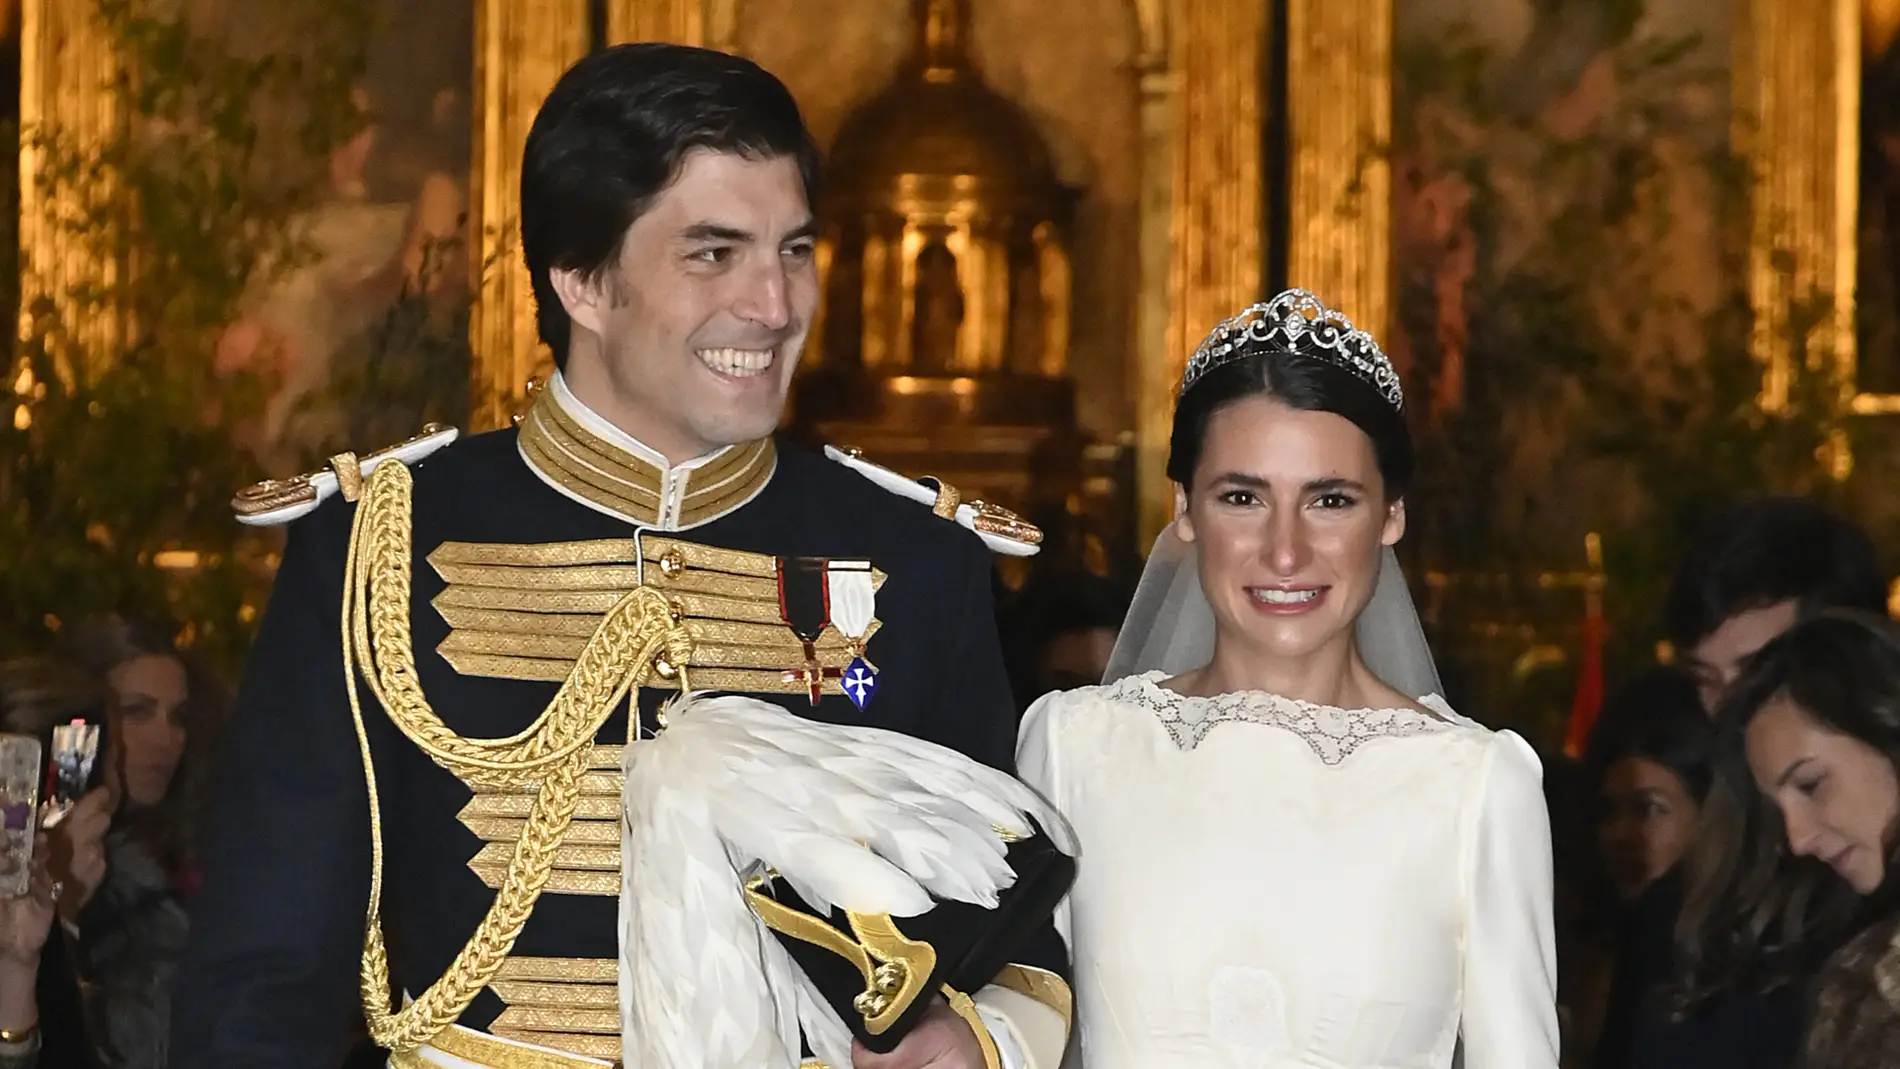 Ana Sainz y Rodrigo Fontcuberta recién casados